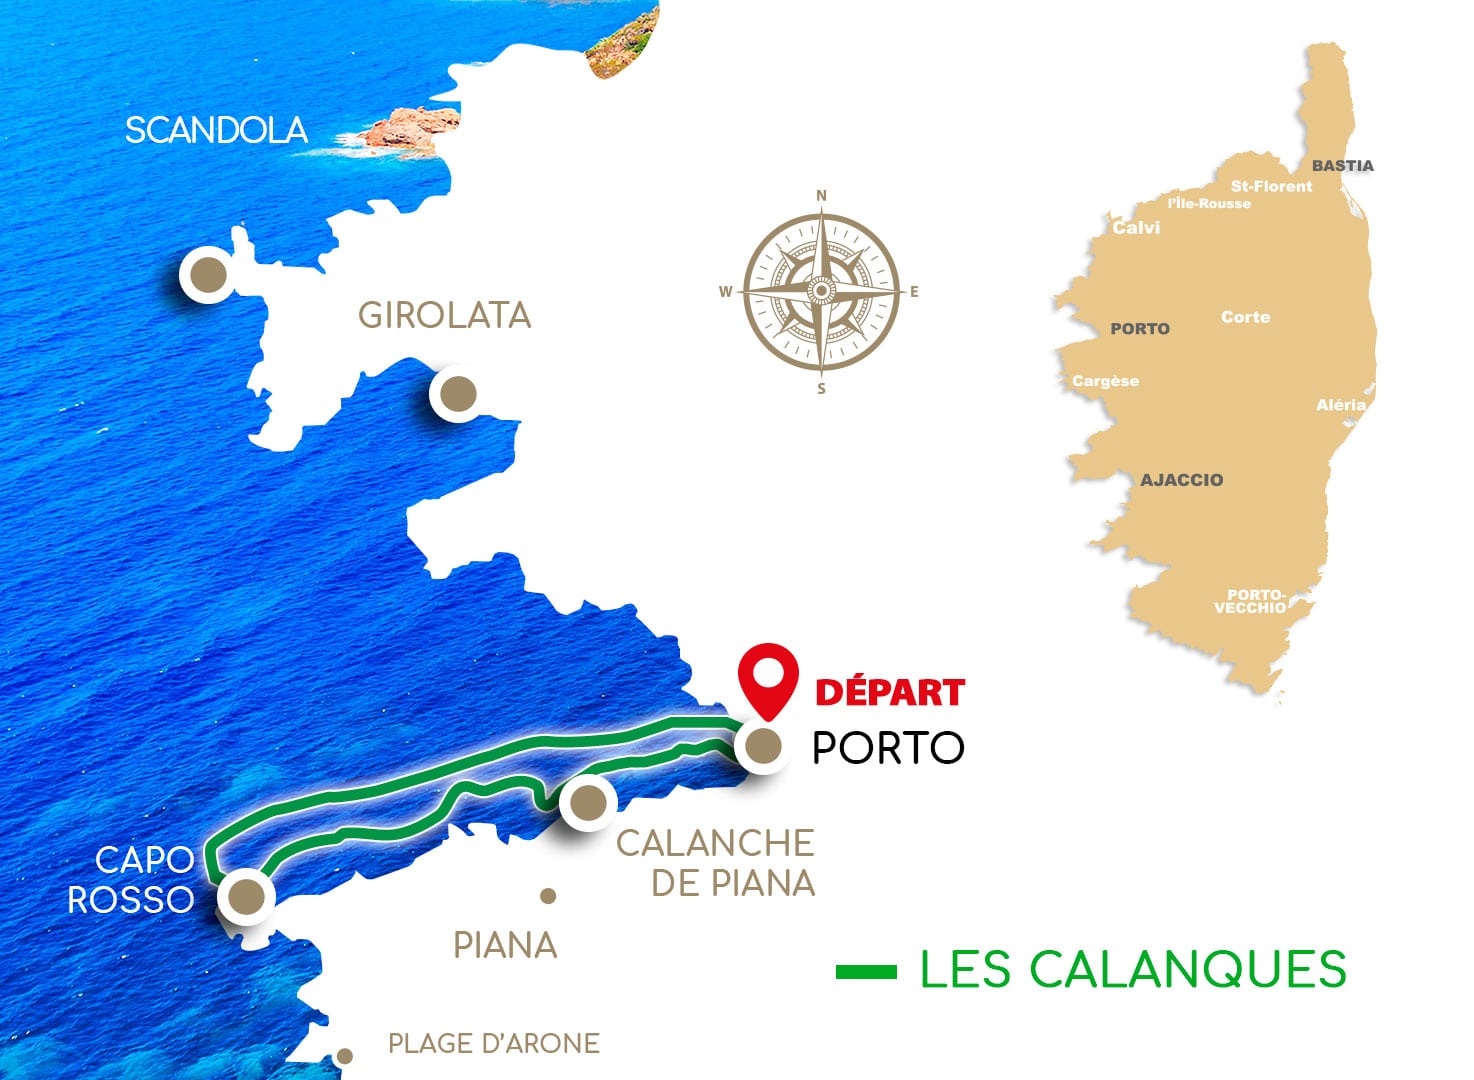 Promenades en mer calanques de piana  (1H30) : Calanque de Piana – Grottes du Capo Rosso